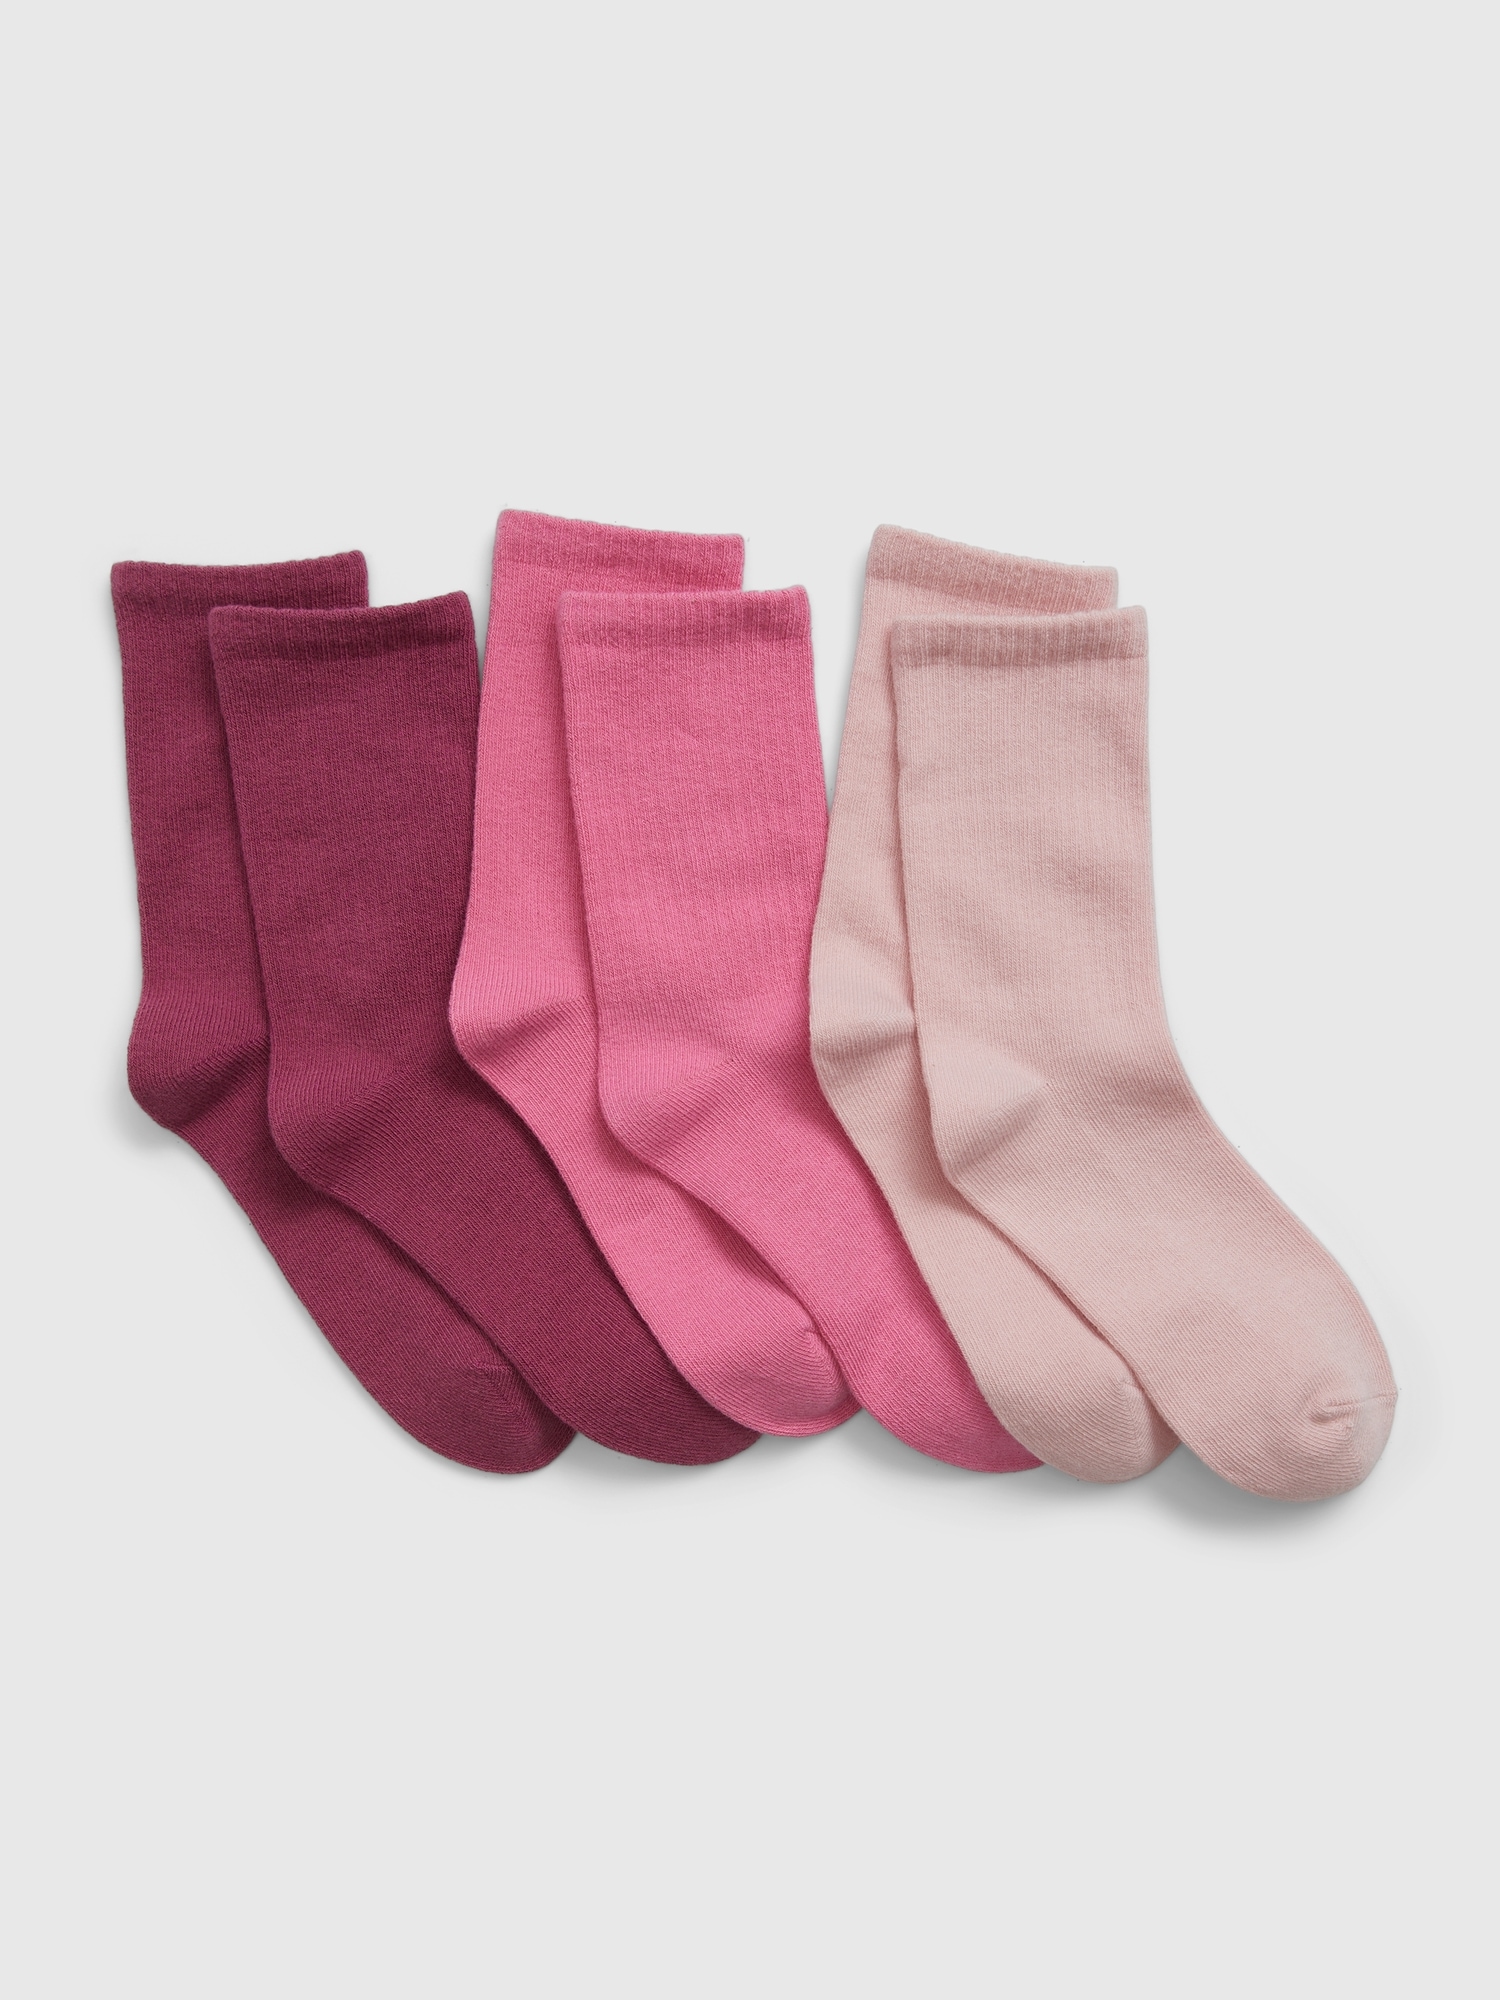 100% Cotton Socks For Kids | Gap